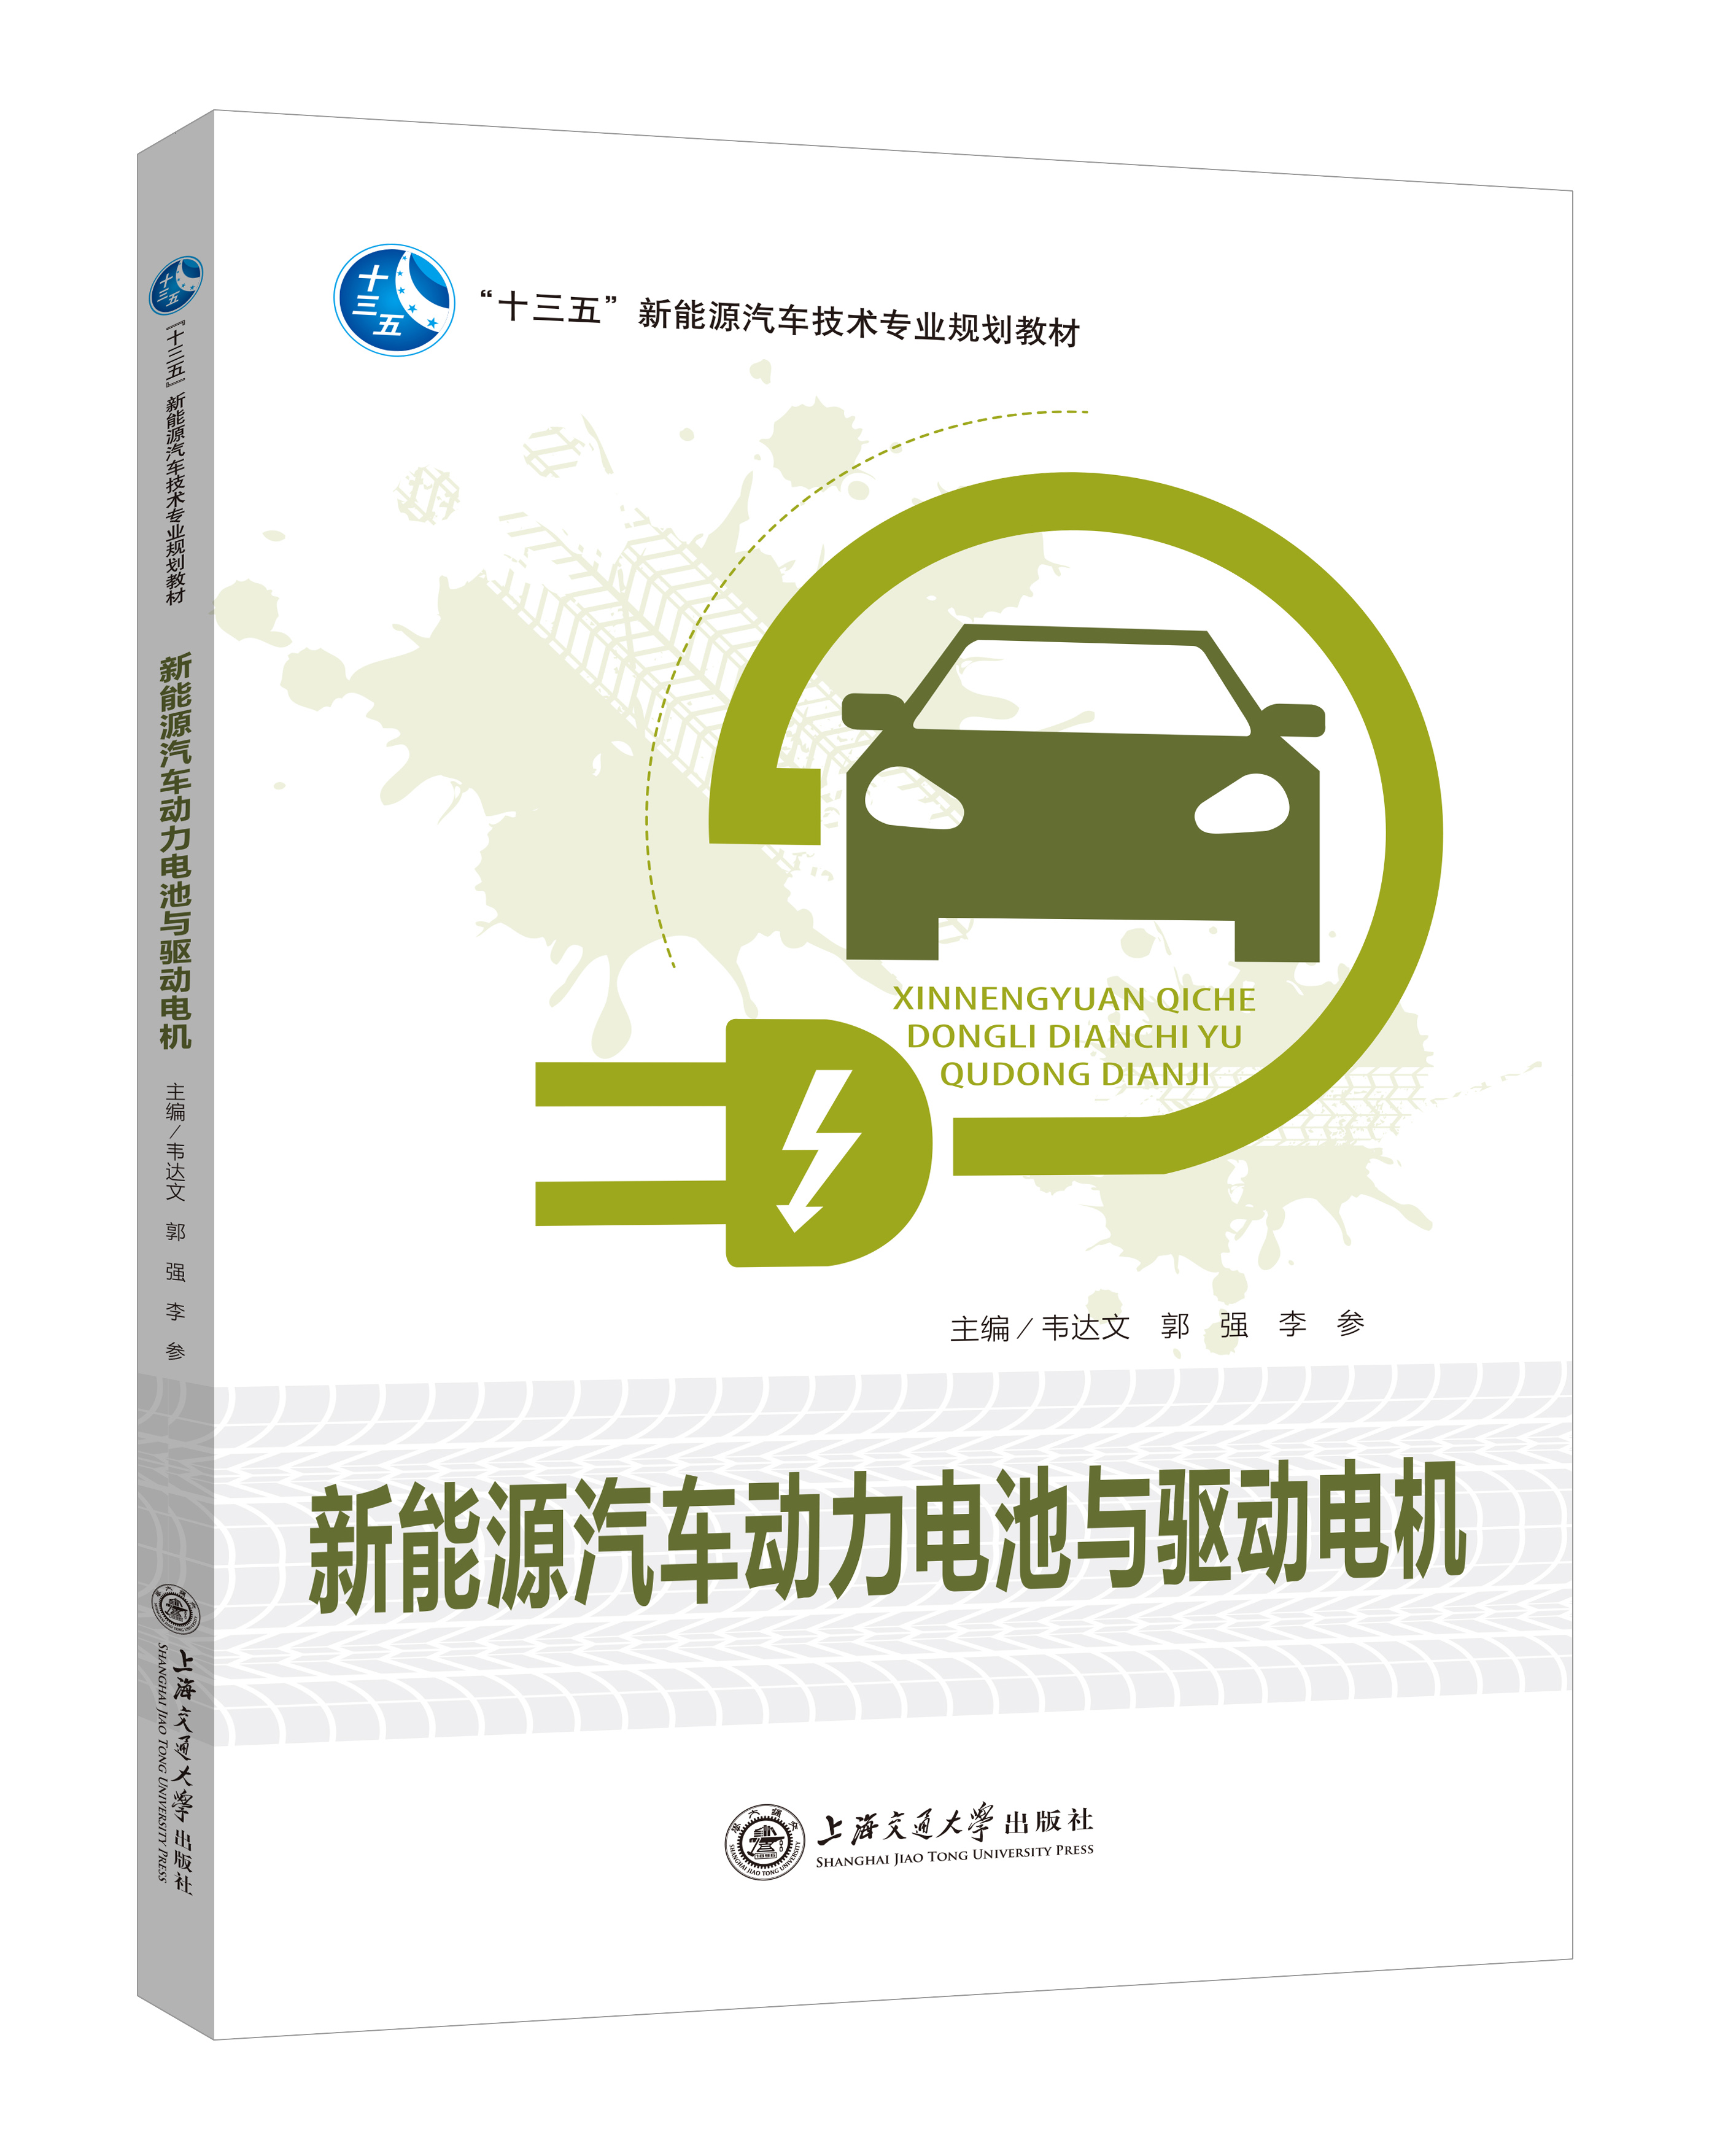 《新能源汽车动力电池与驱动电机》(双色版)